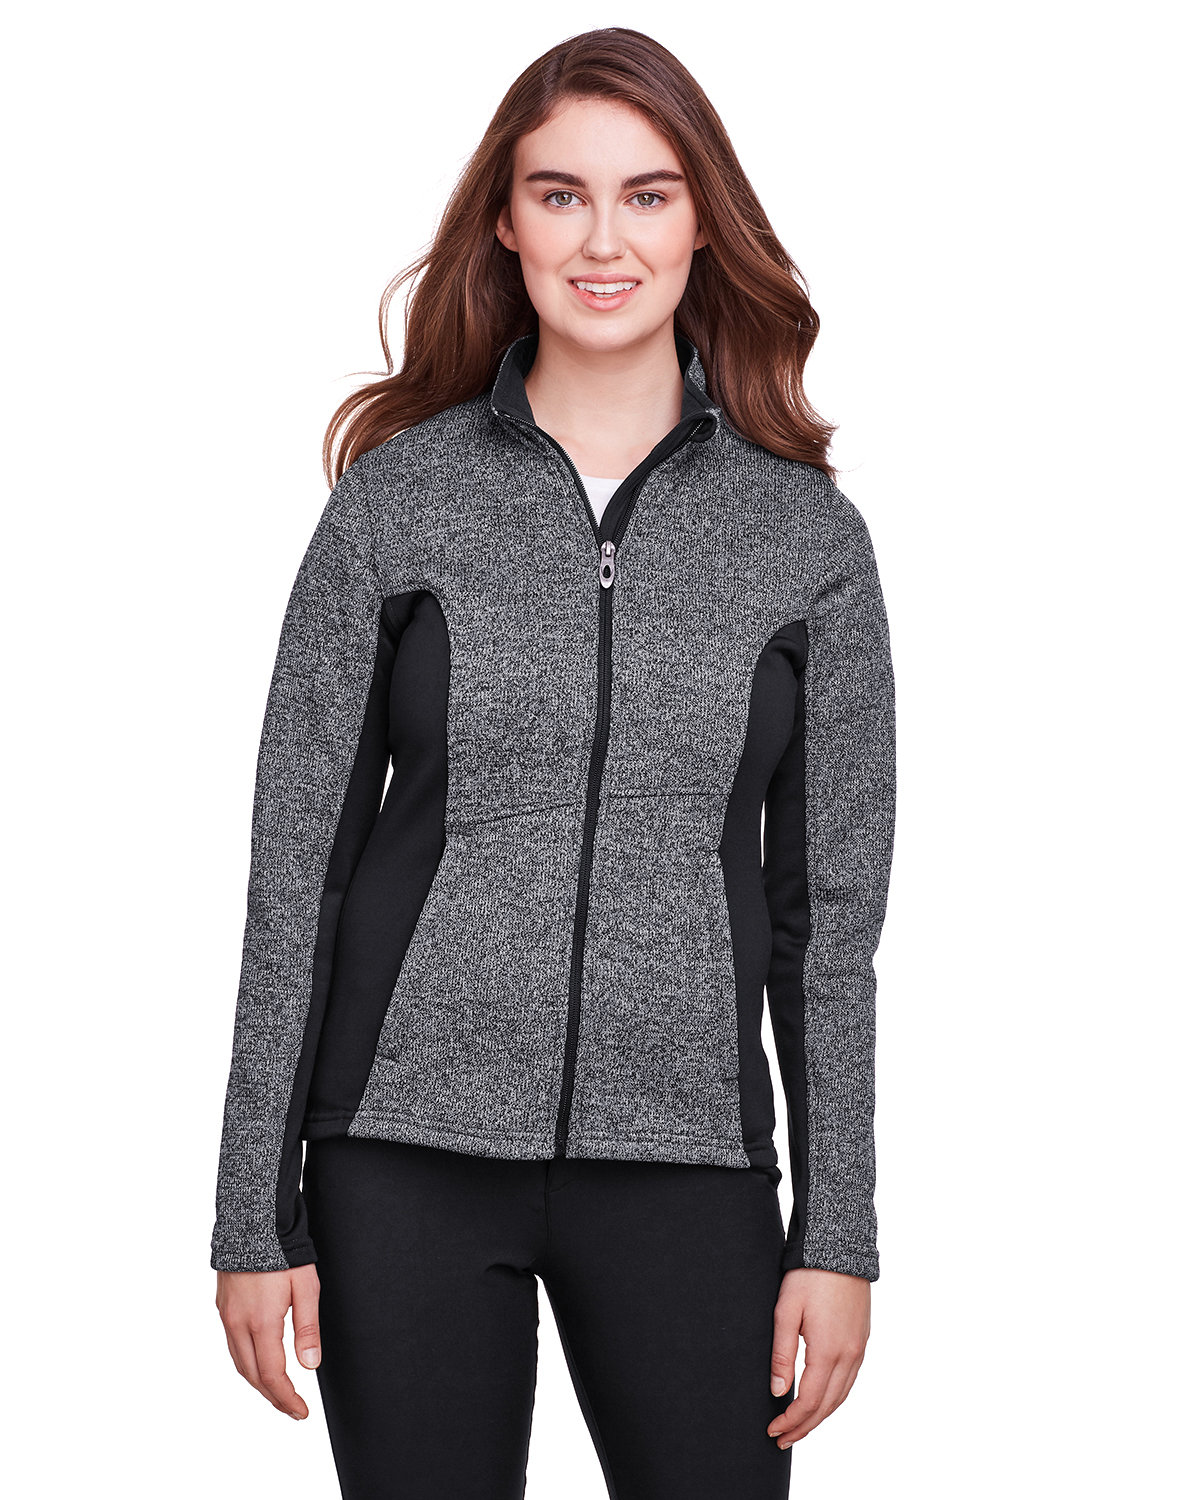 Spyder Ladies' Constant Full-Zip Sweater Fleece Jacket BLACK HTHR/ BLK 